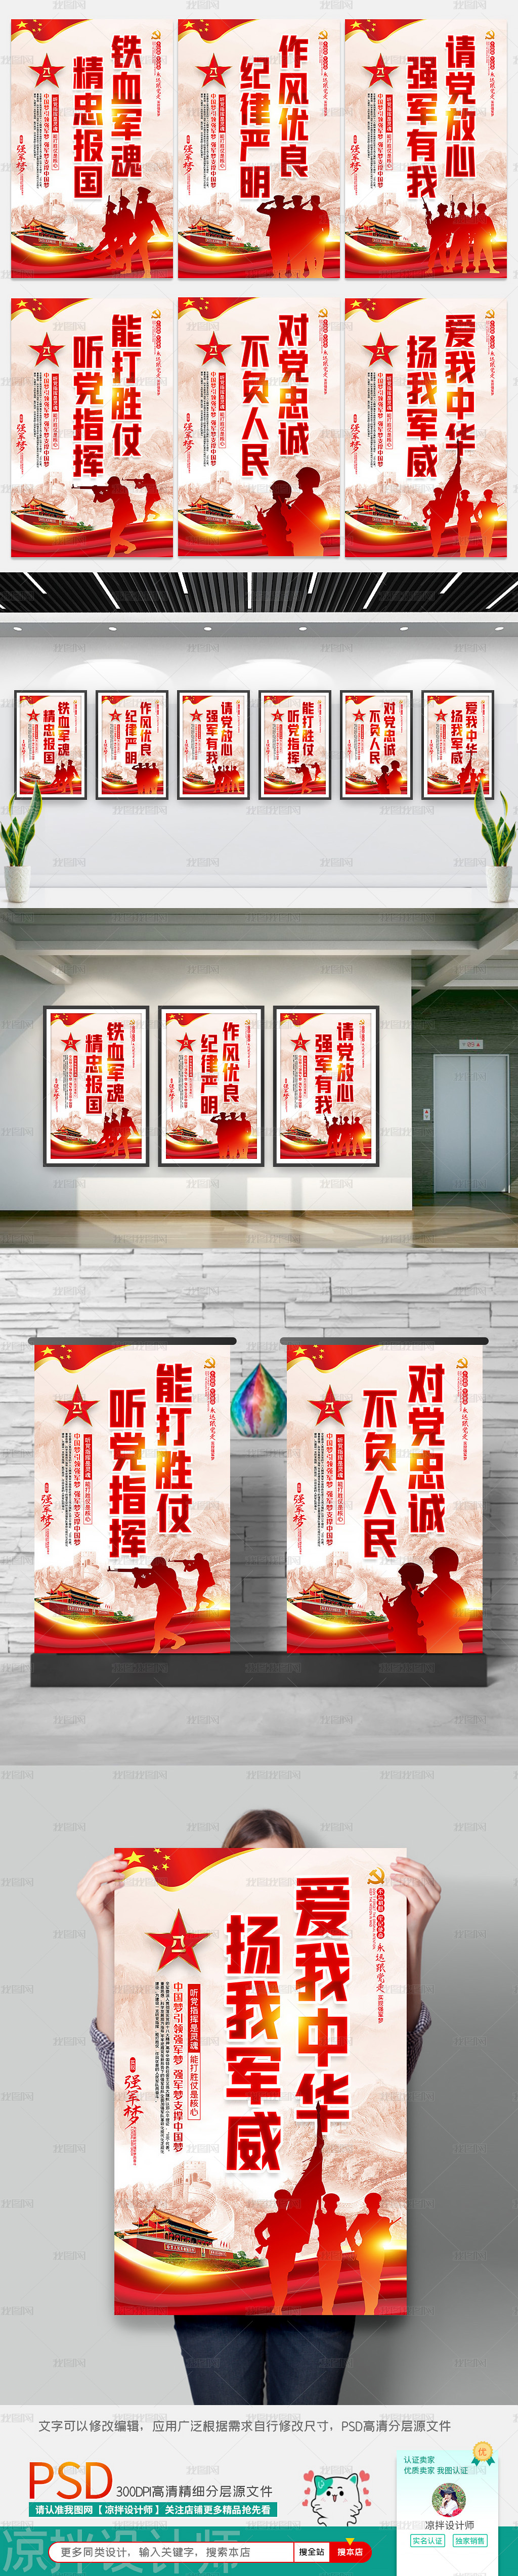 全套完整政府党建社区部队军队文化标语宣传海报